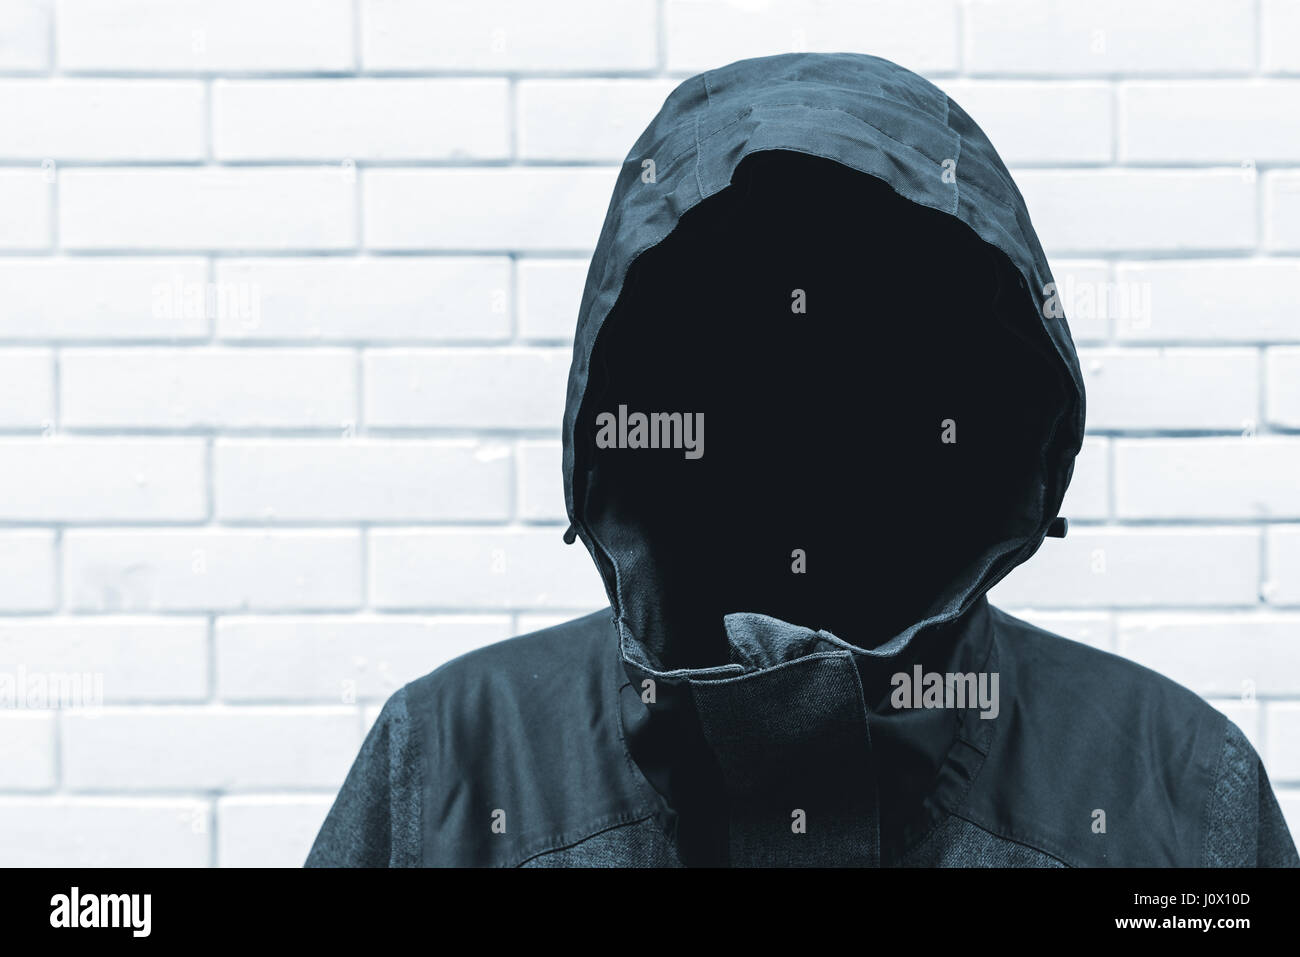 Protetto testimonianza il concetto di identità con volto persona con cappuccio Foto Stock